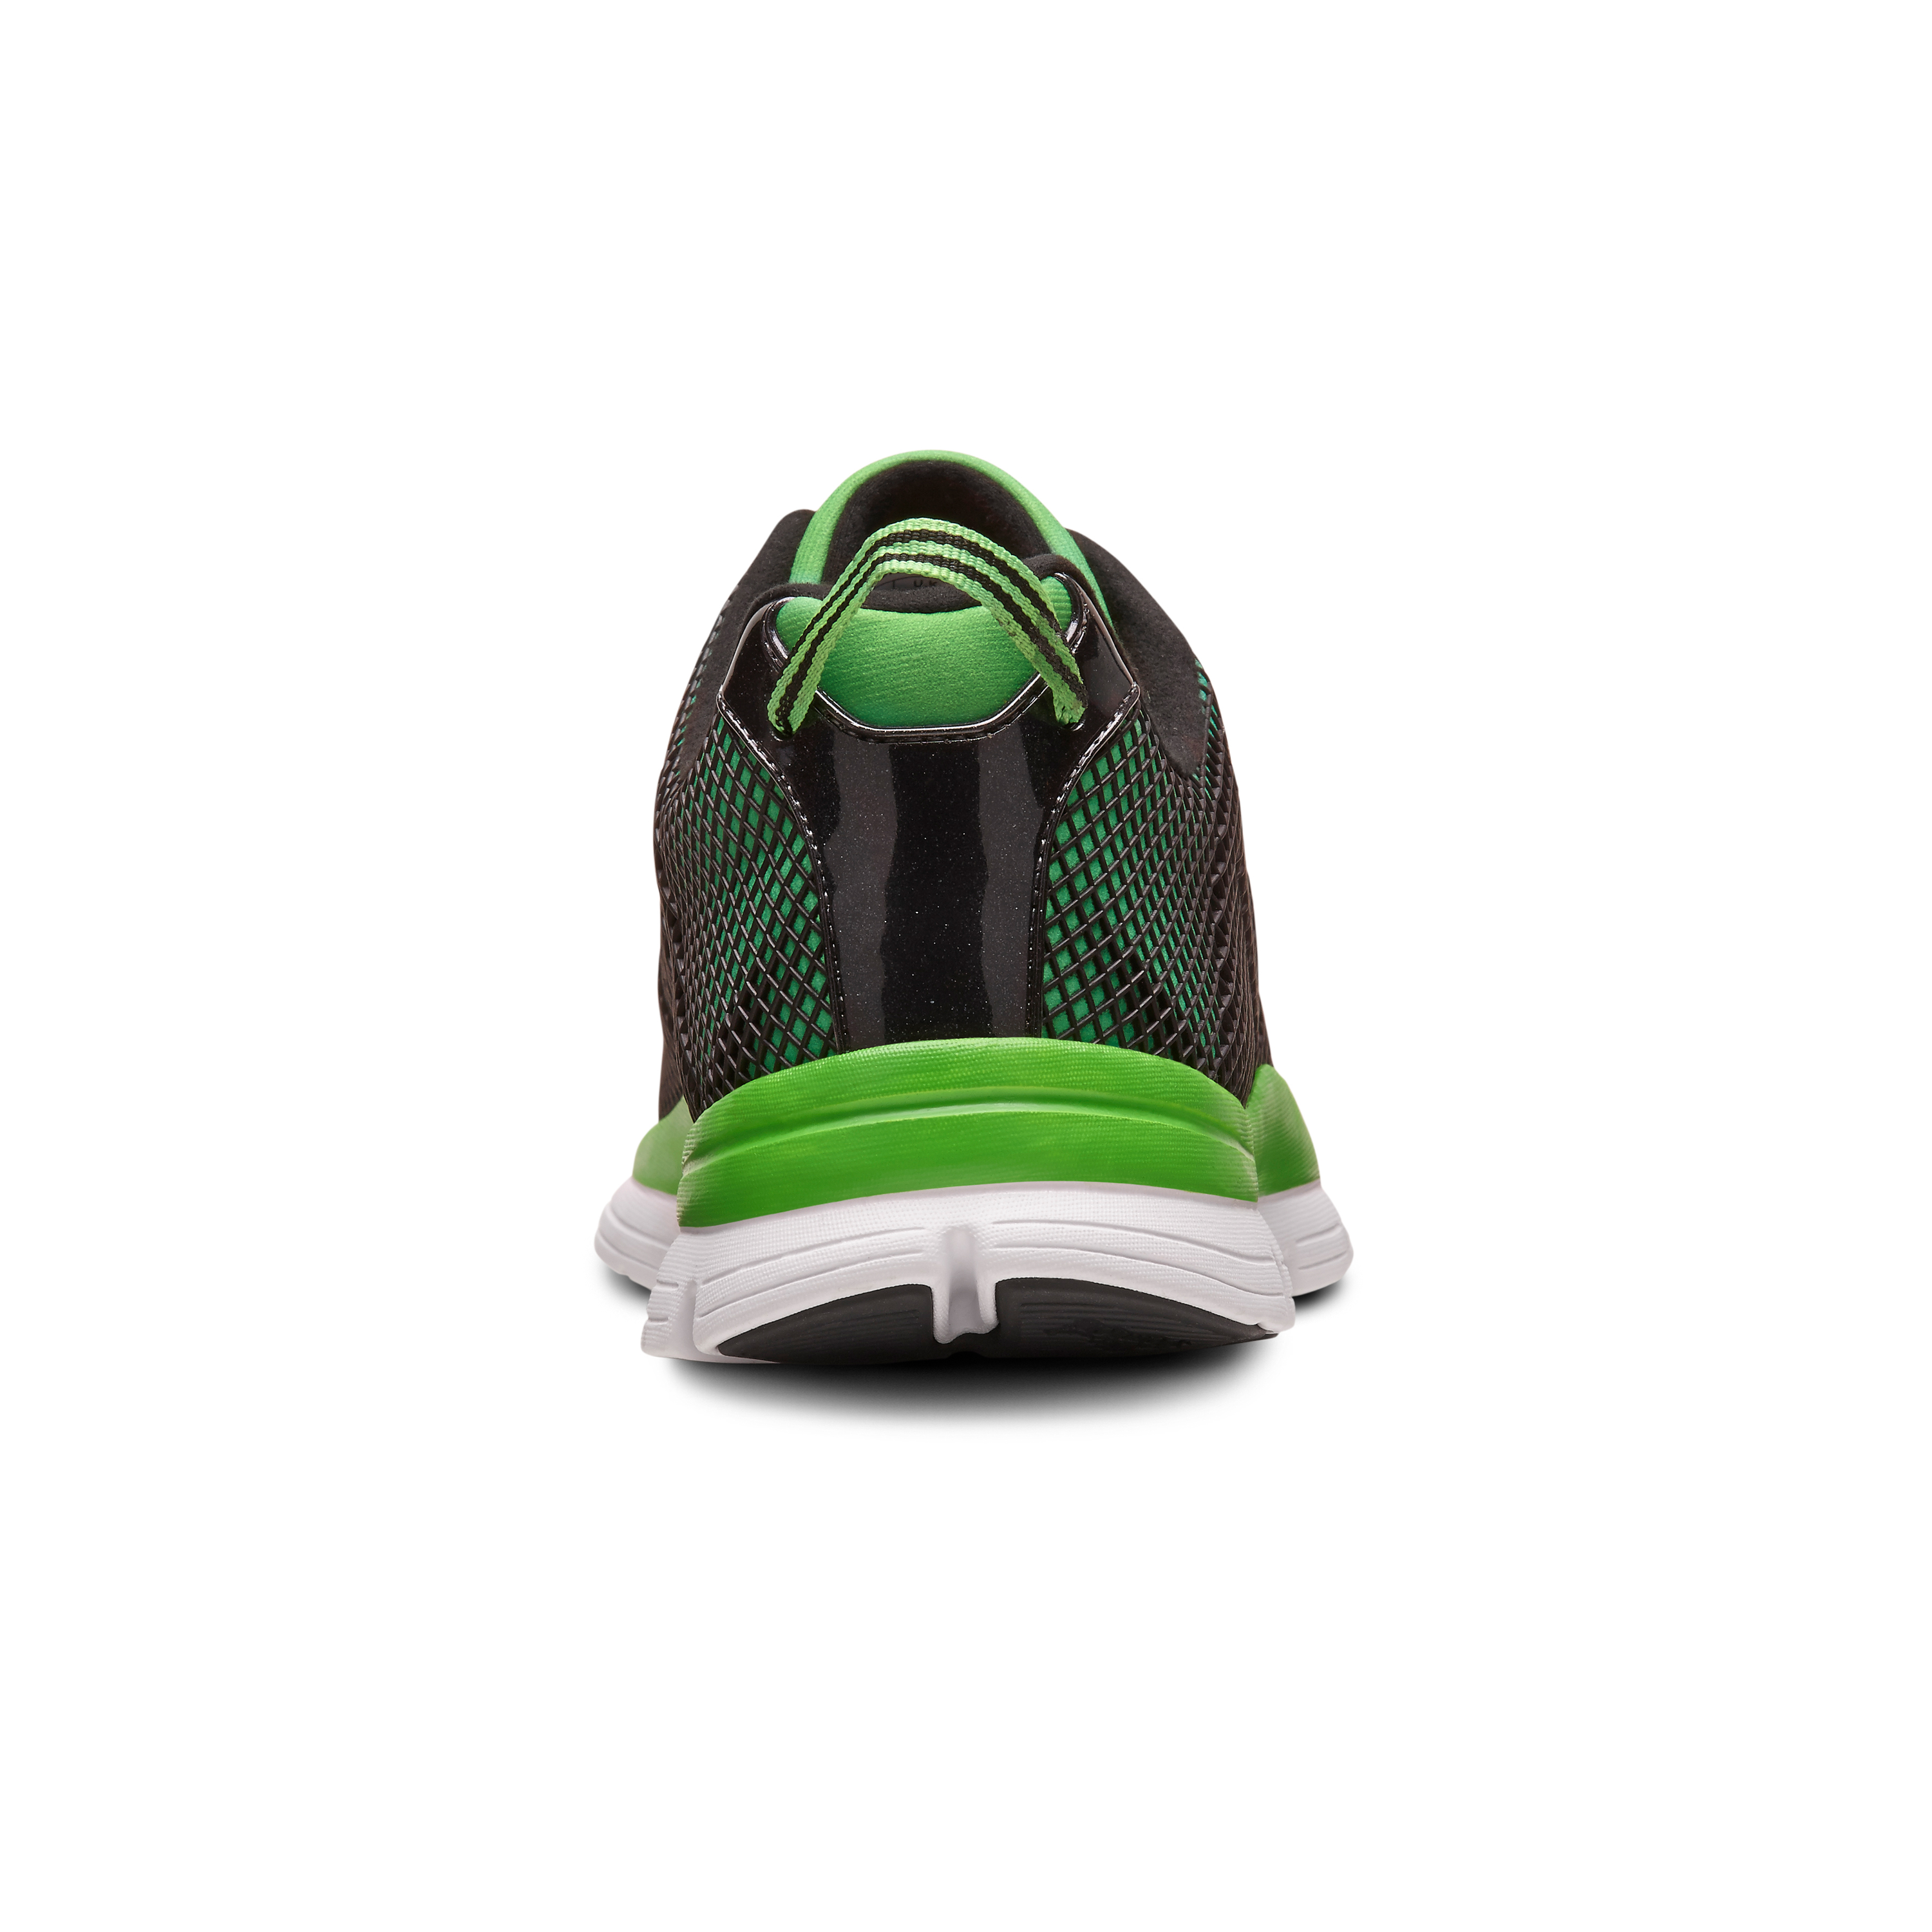 Zusatzbild DR. COMFORT® Katy grün, hinten, Orthopädische Schuhe, Besonders weicher und leichter Freizeit- und Aktivschuh